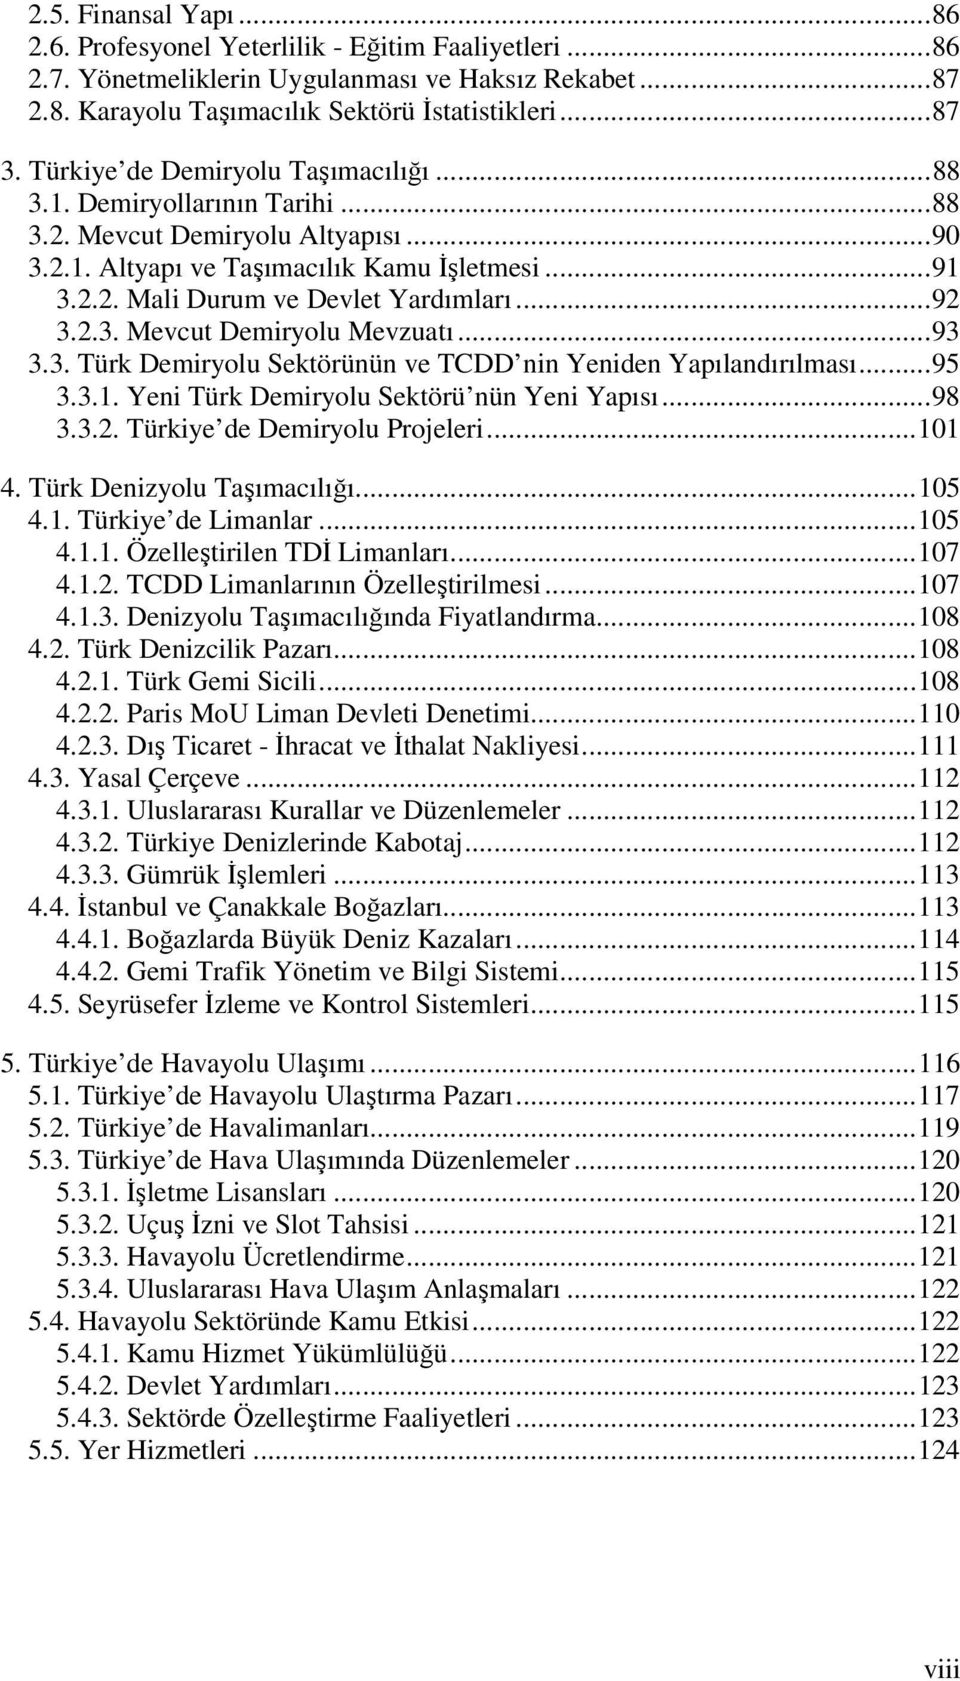 ..92 3.2.3. Mevcut Demiryolu Mevzuatı...93 3.3. Türk Demiryolu Sektörünün ve TCDD nin Yeniden Yapılandırılması...95 3.3.1. Yeni Türk Demiryolu Sektörü nün Yeni Yapısı...98 3.3.2. Türkiye de Demiryolu Projeleri.